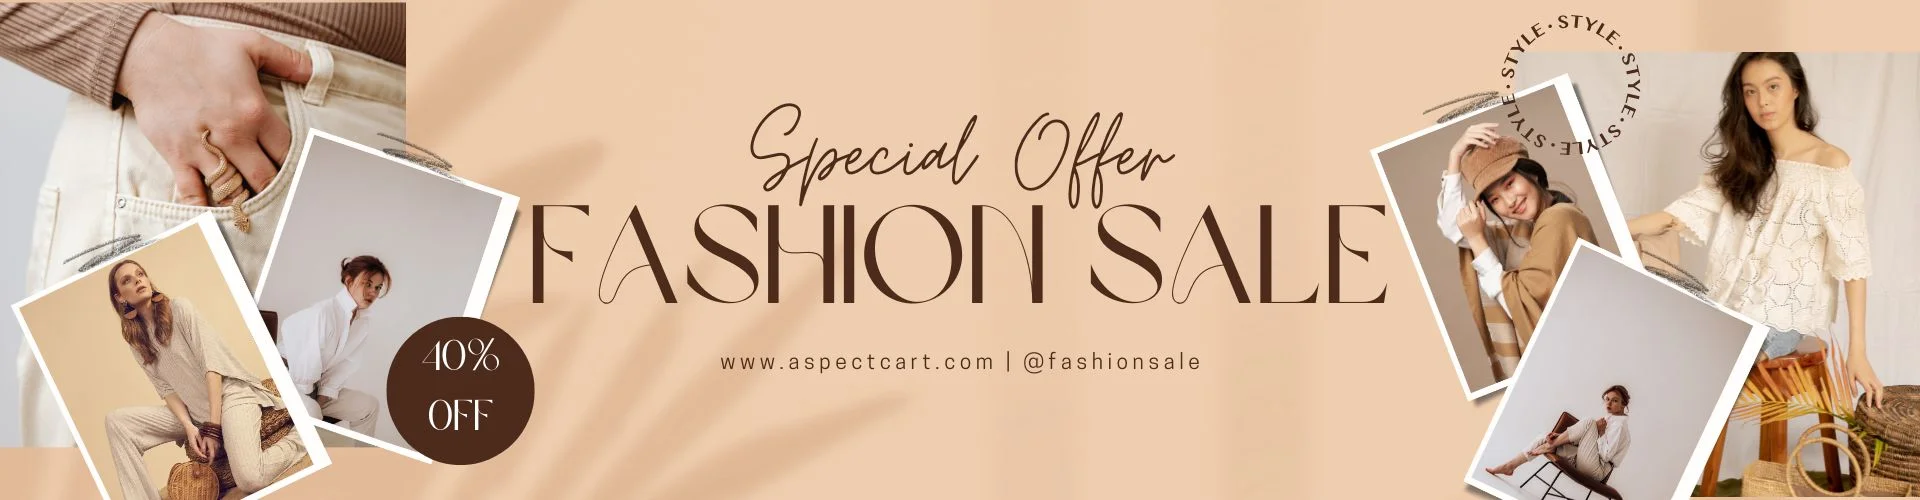 Banner pentru o ofertă specială la un magazin online de modă